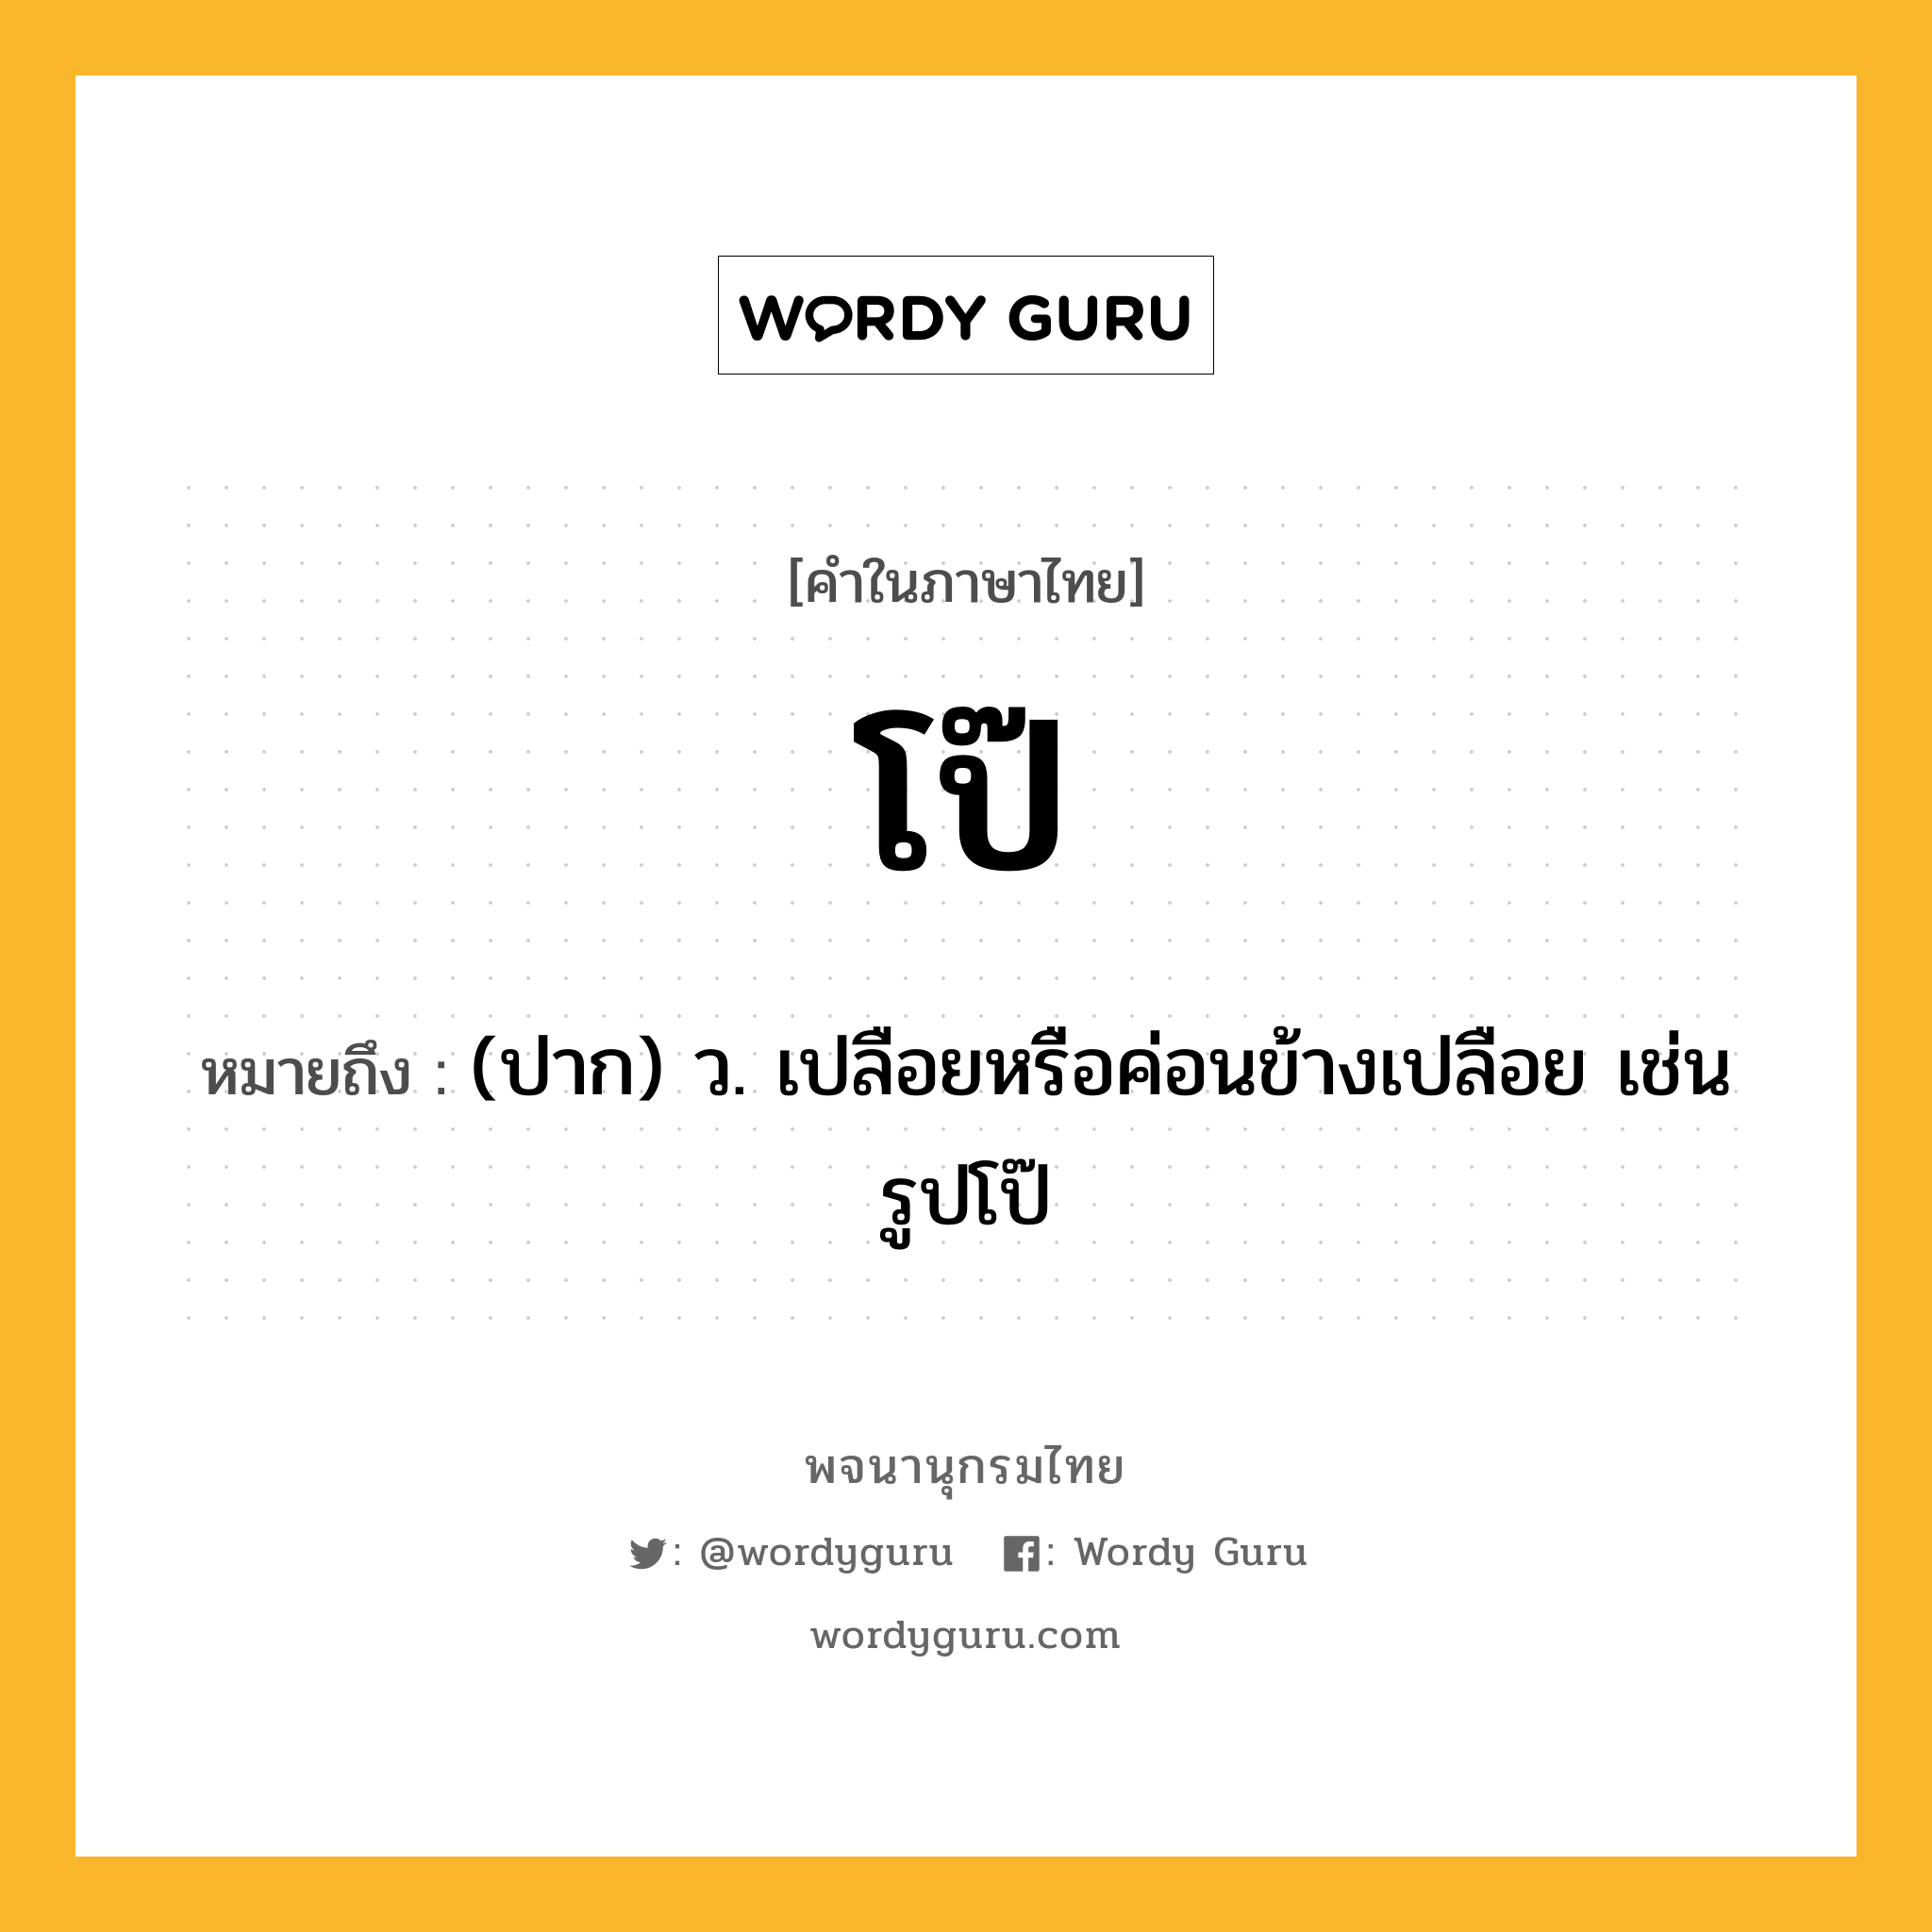 โป๊ ความหมาย หมายถึงอะไร?, คำในภาษาไทย โป๊ หมายถึง (ปาก) ว. เปลือยหรือค่อนข้างเปลือย เช่น รูปโป๊